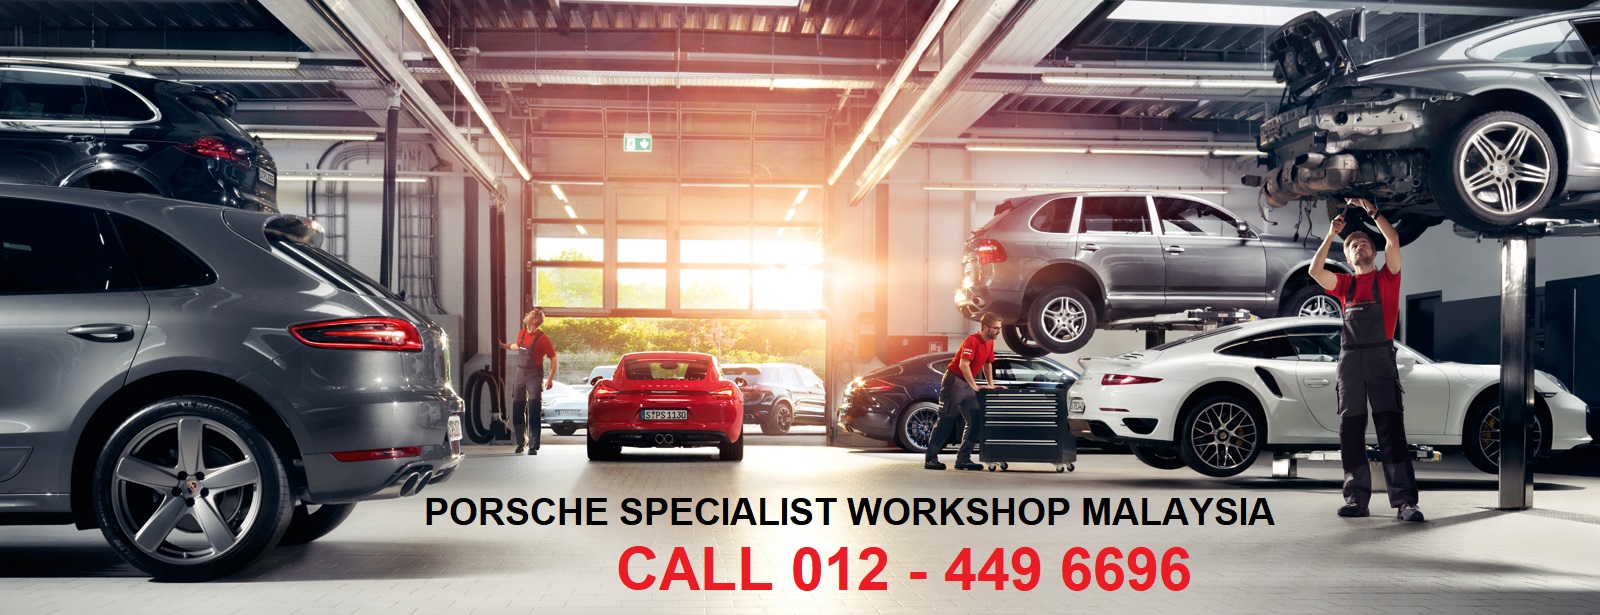 Porsche Specialist Workshop in Malaysia